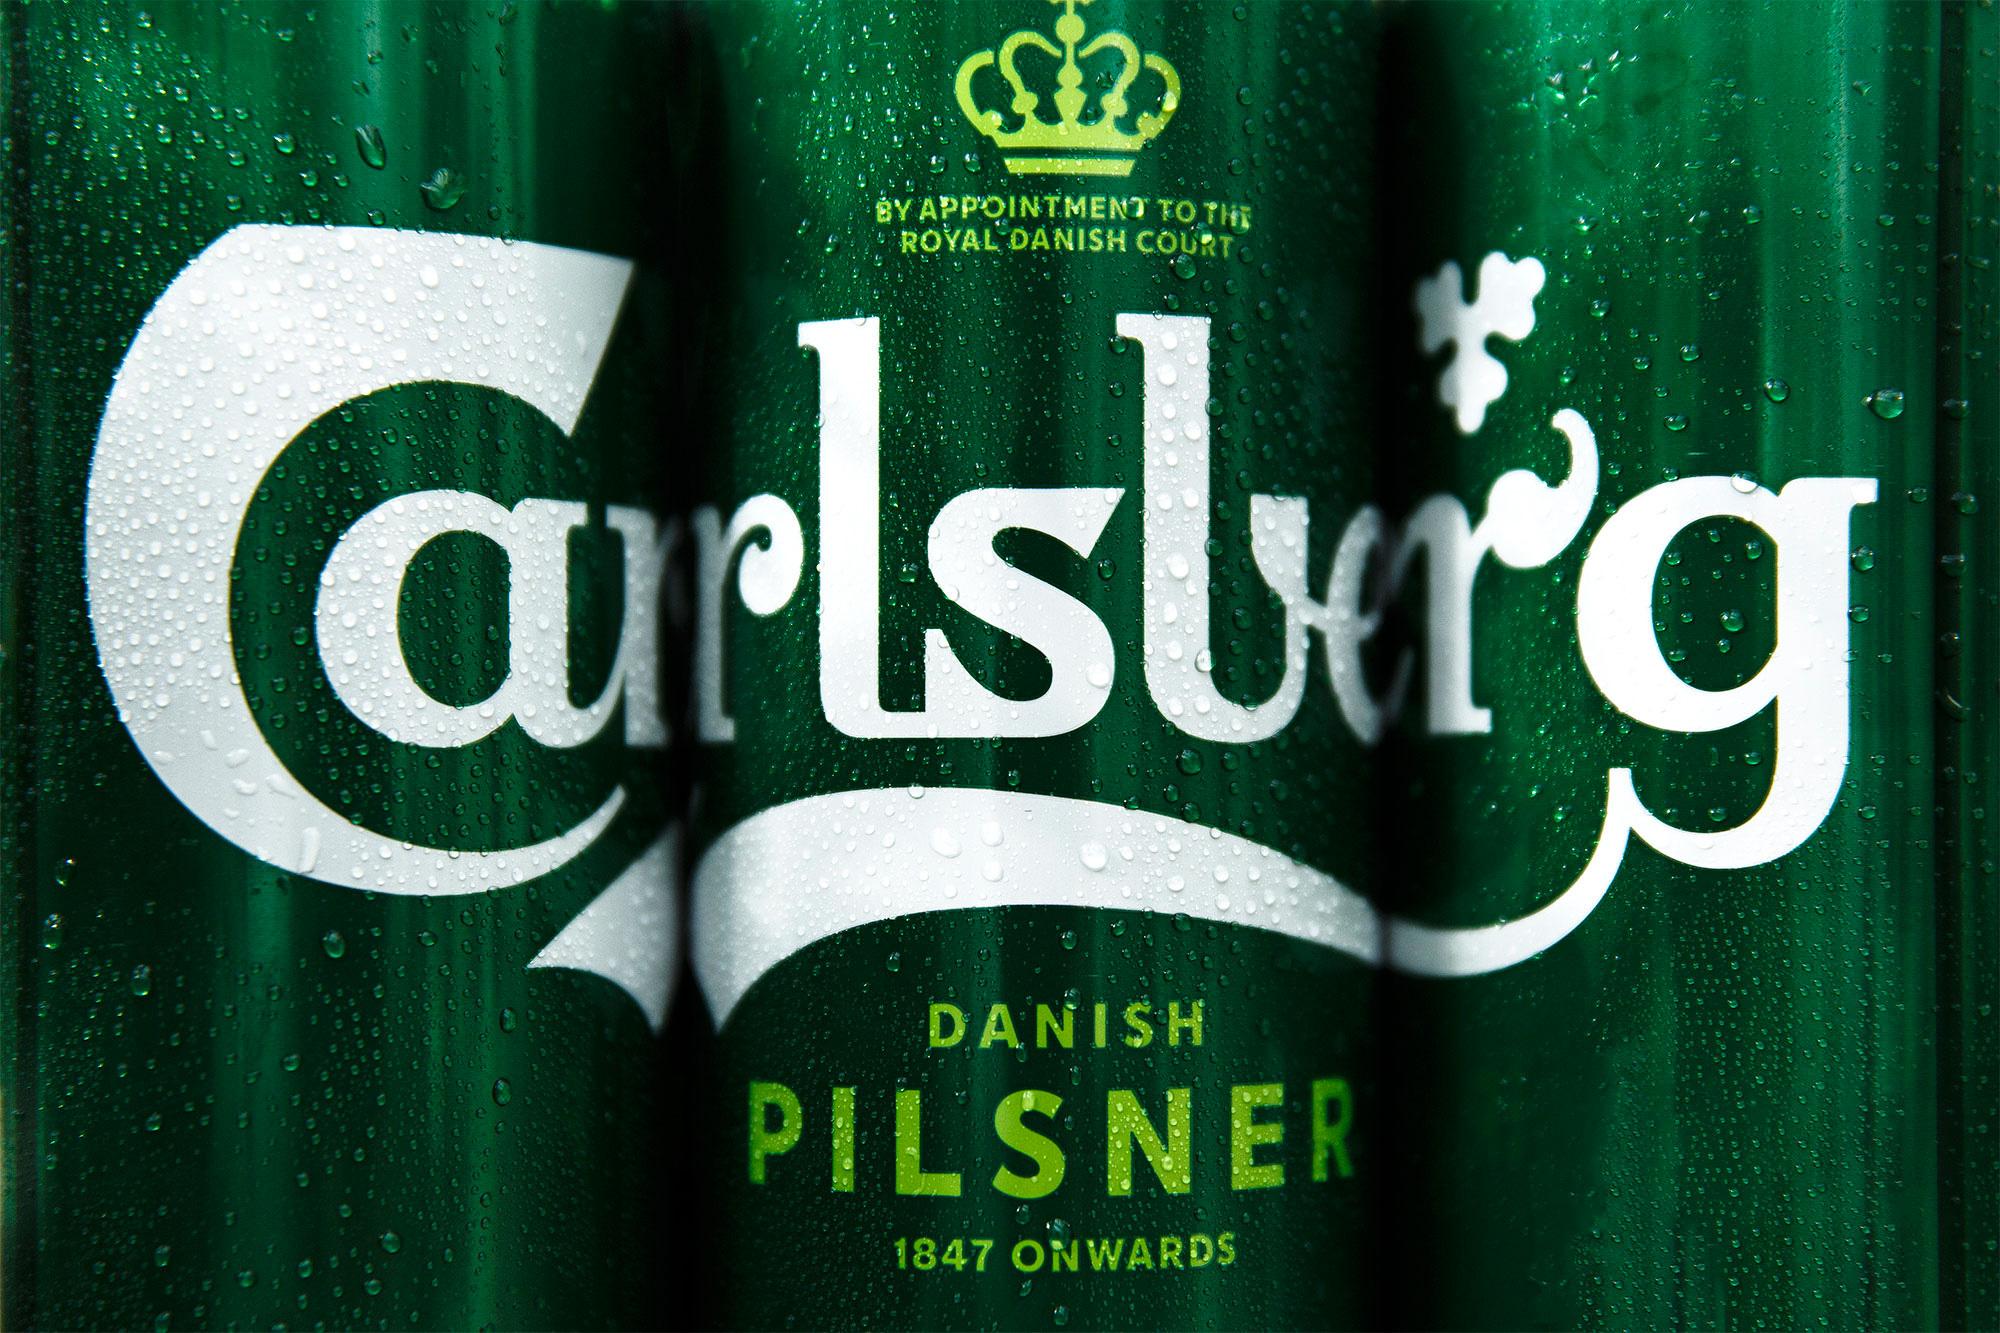 Carlsberg Logo - Brand New: New Logo and Packaging for Carlsberg